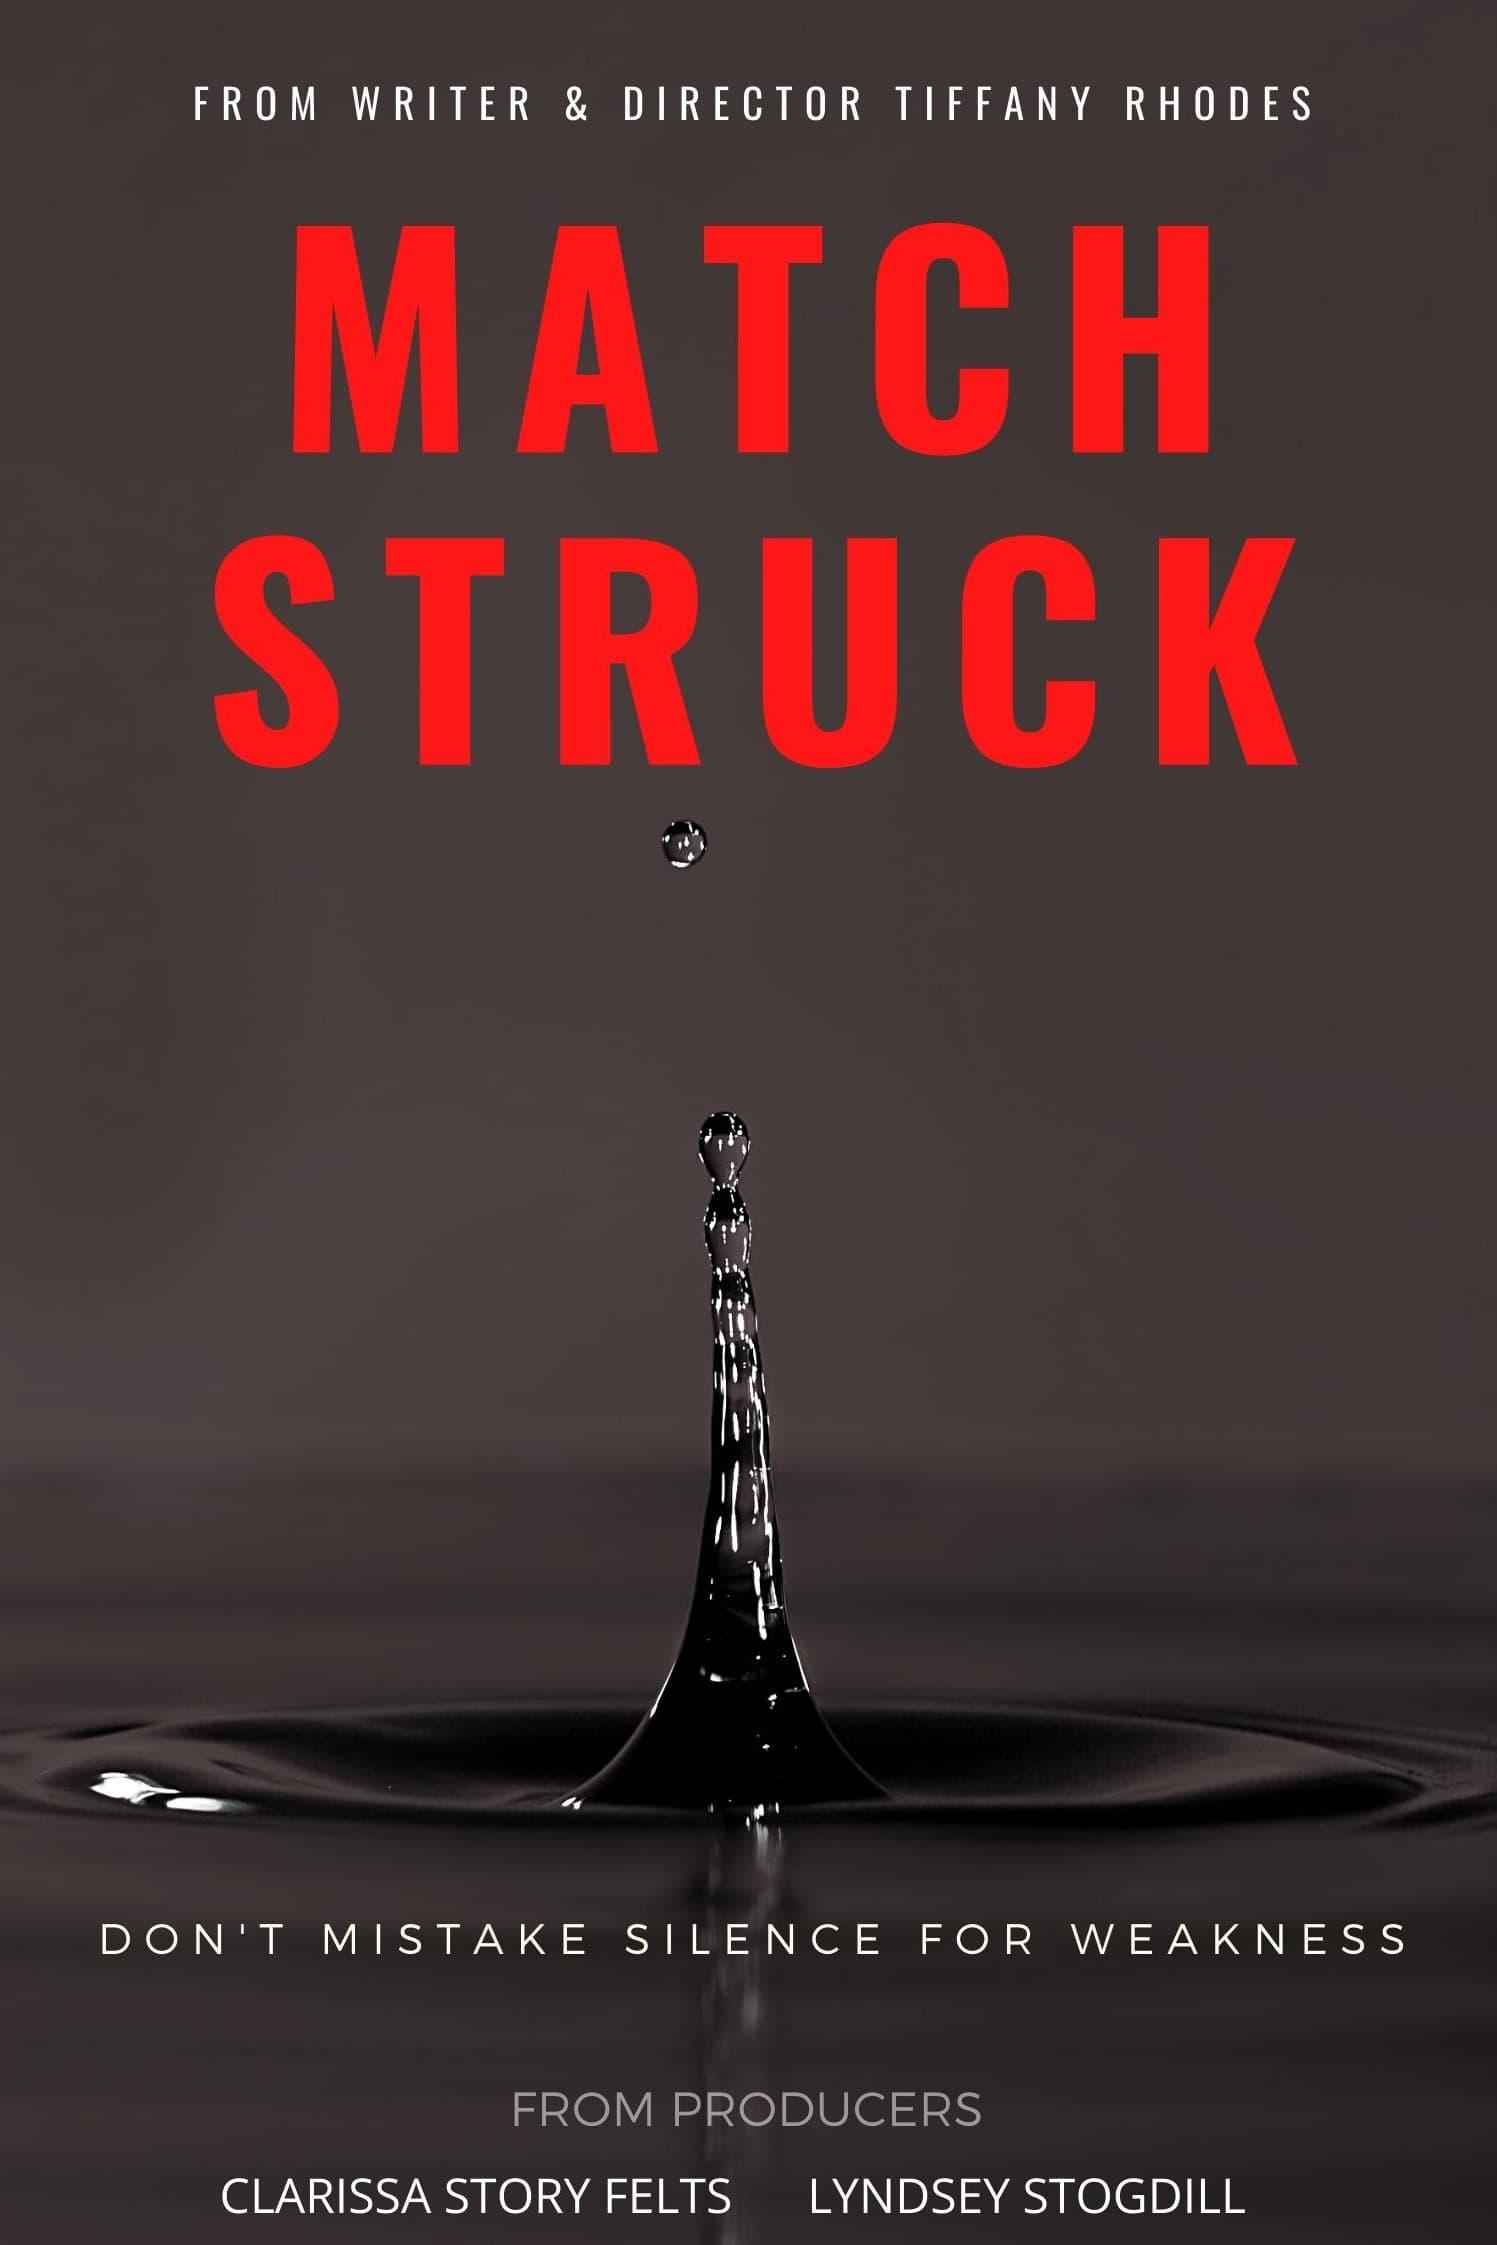 Match Struck poster